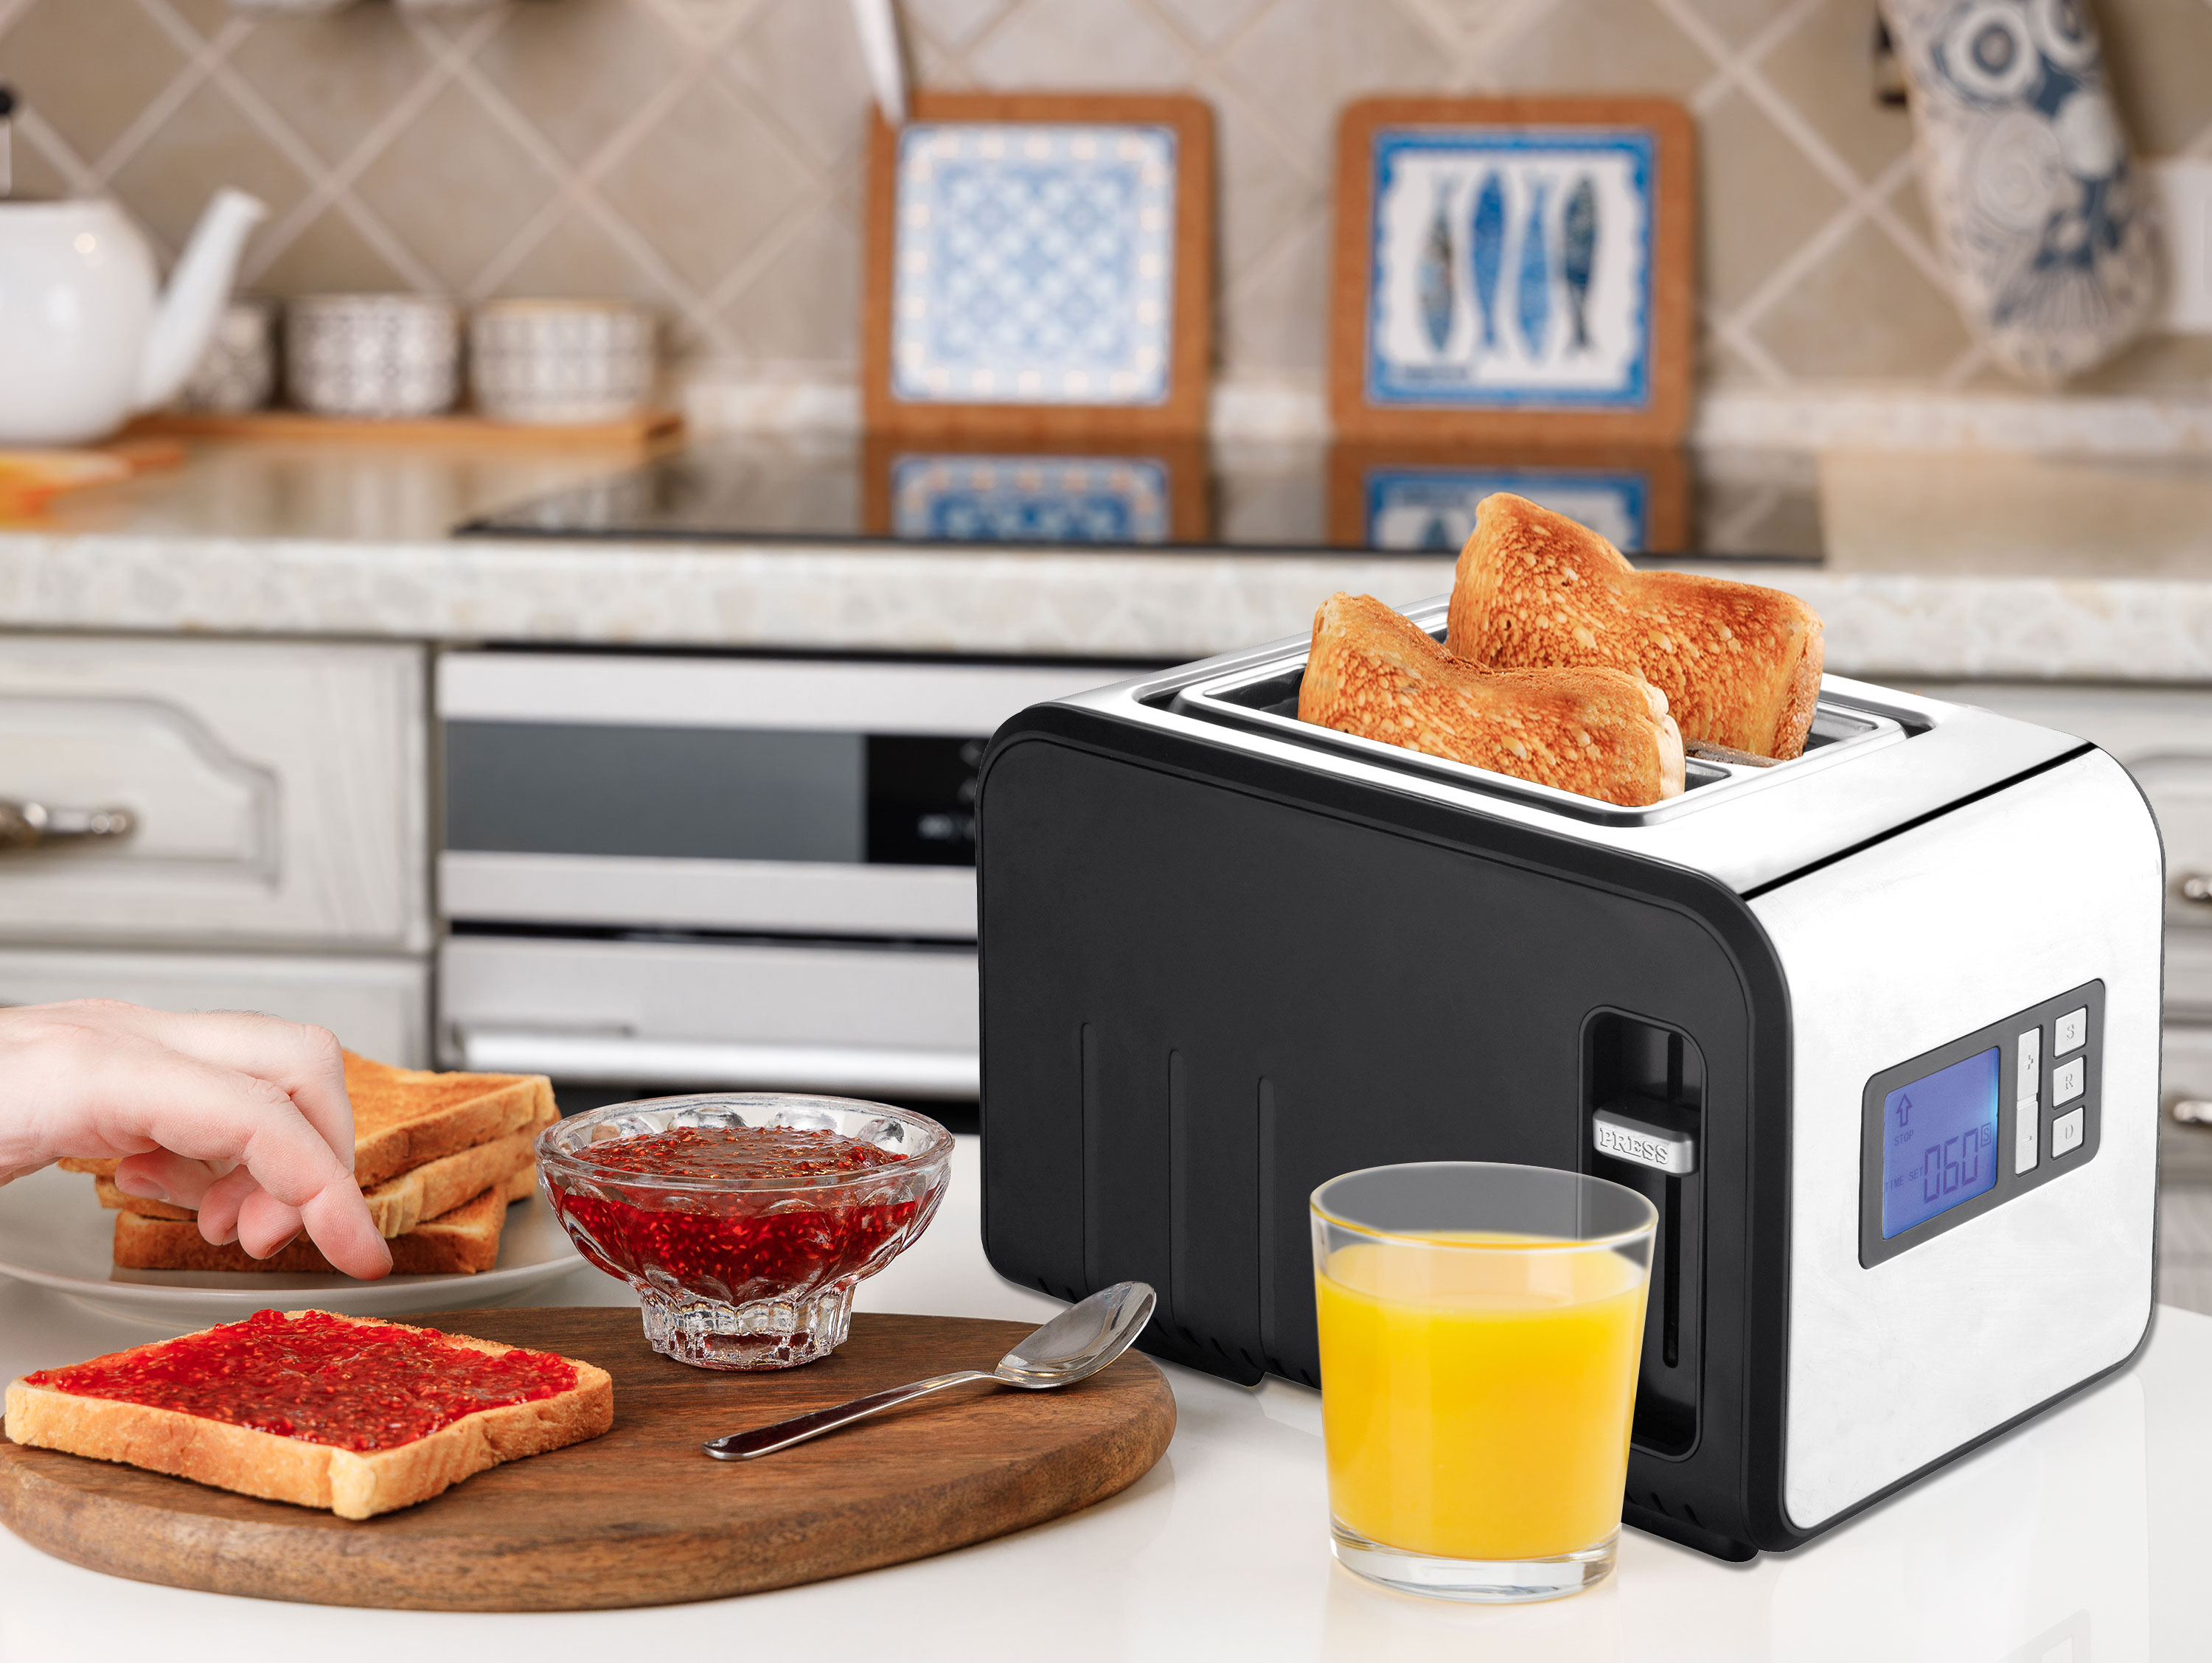 800W Edelstahltoaster PURLINE und (800 breiten Schwarz Watt, Digitalanzeige Schlitze: Toaster 2) 2 mit Schlitzen